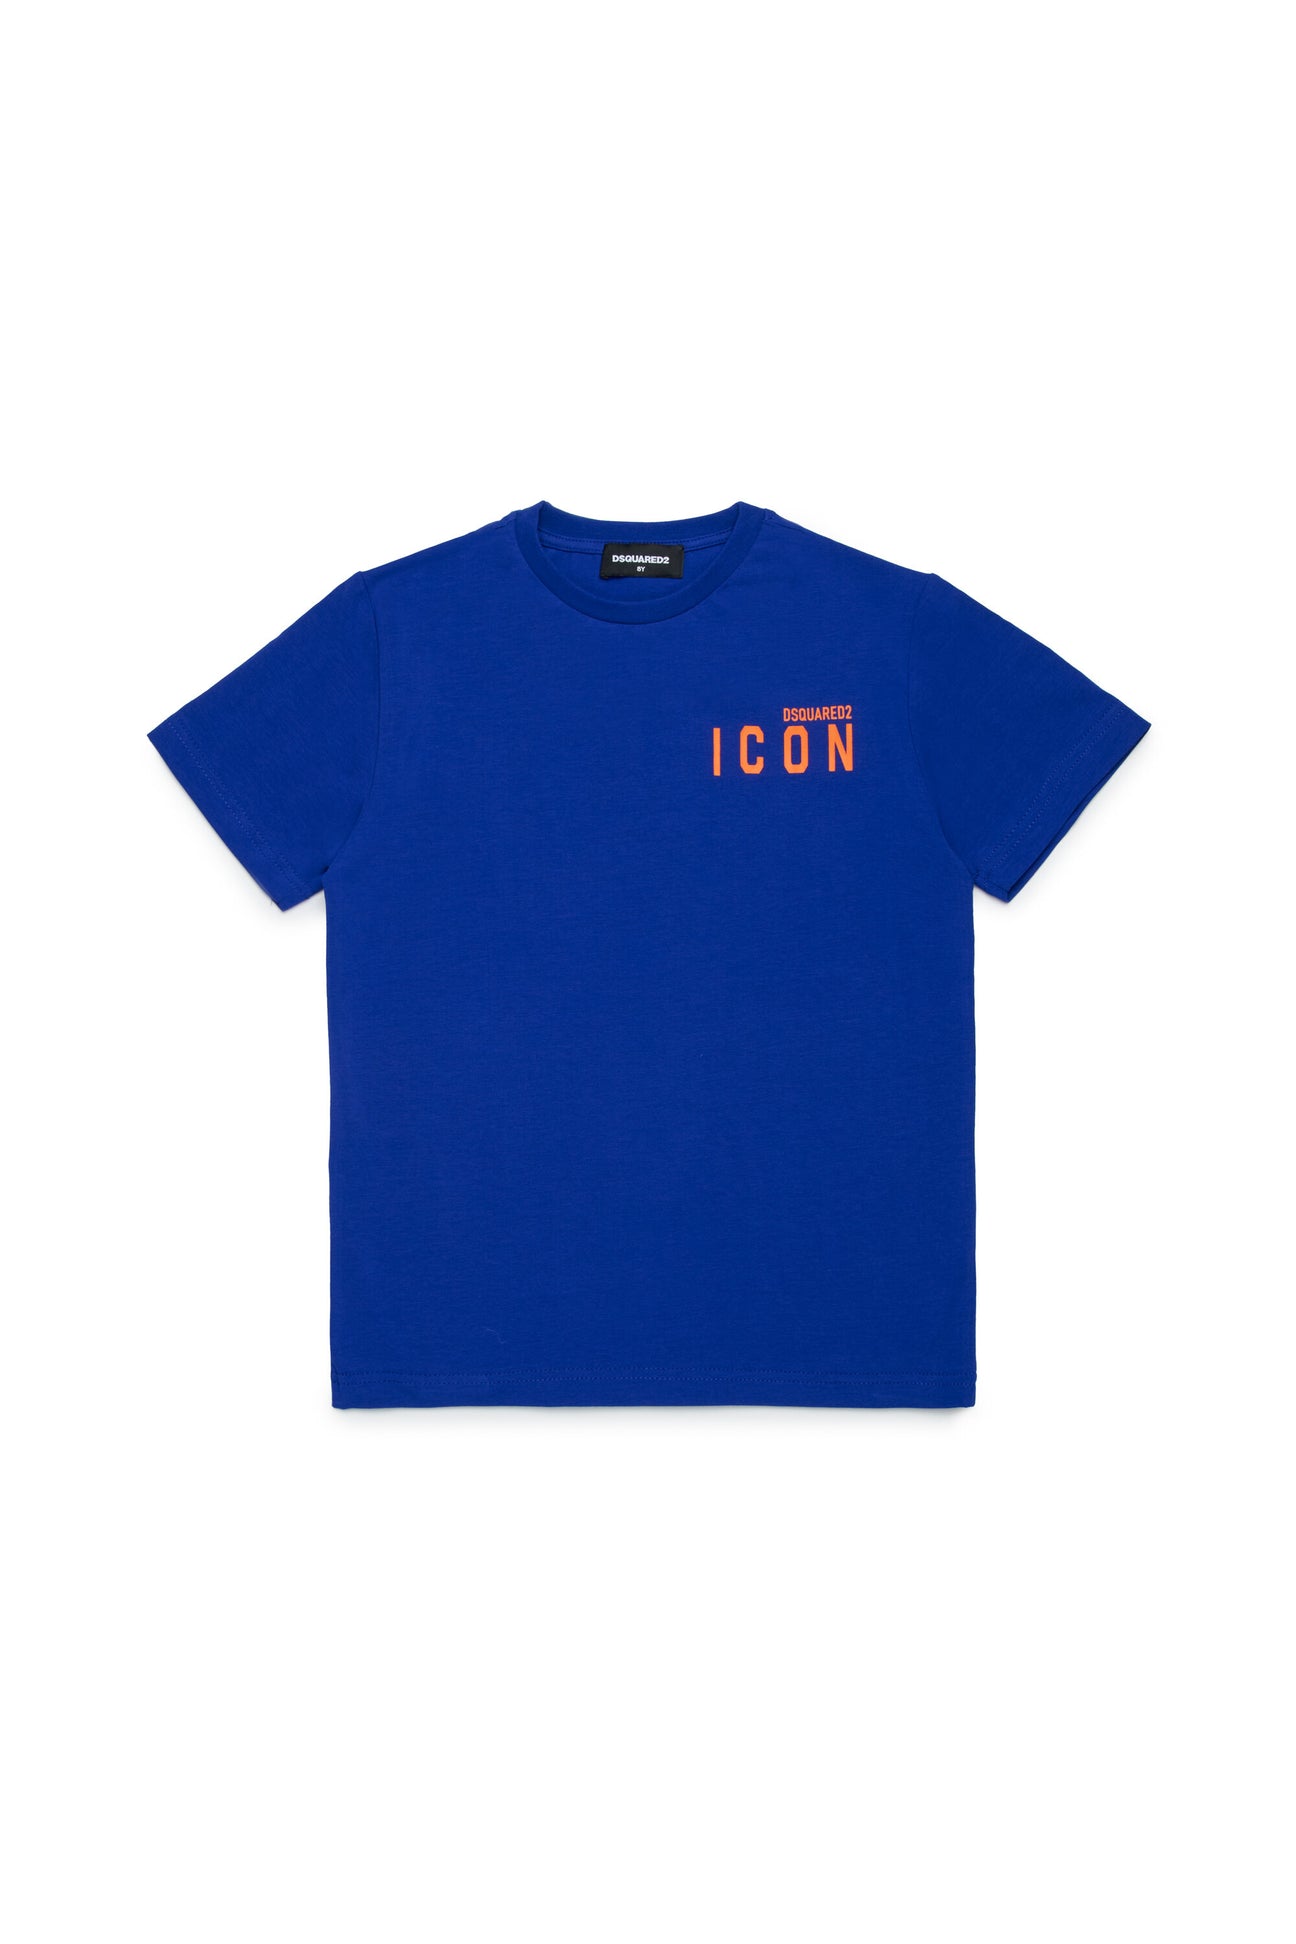 ICON branded underwear T-shirt ICON branded underwear T-shirt